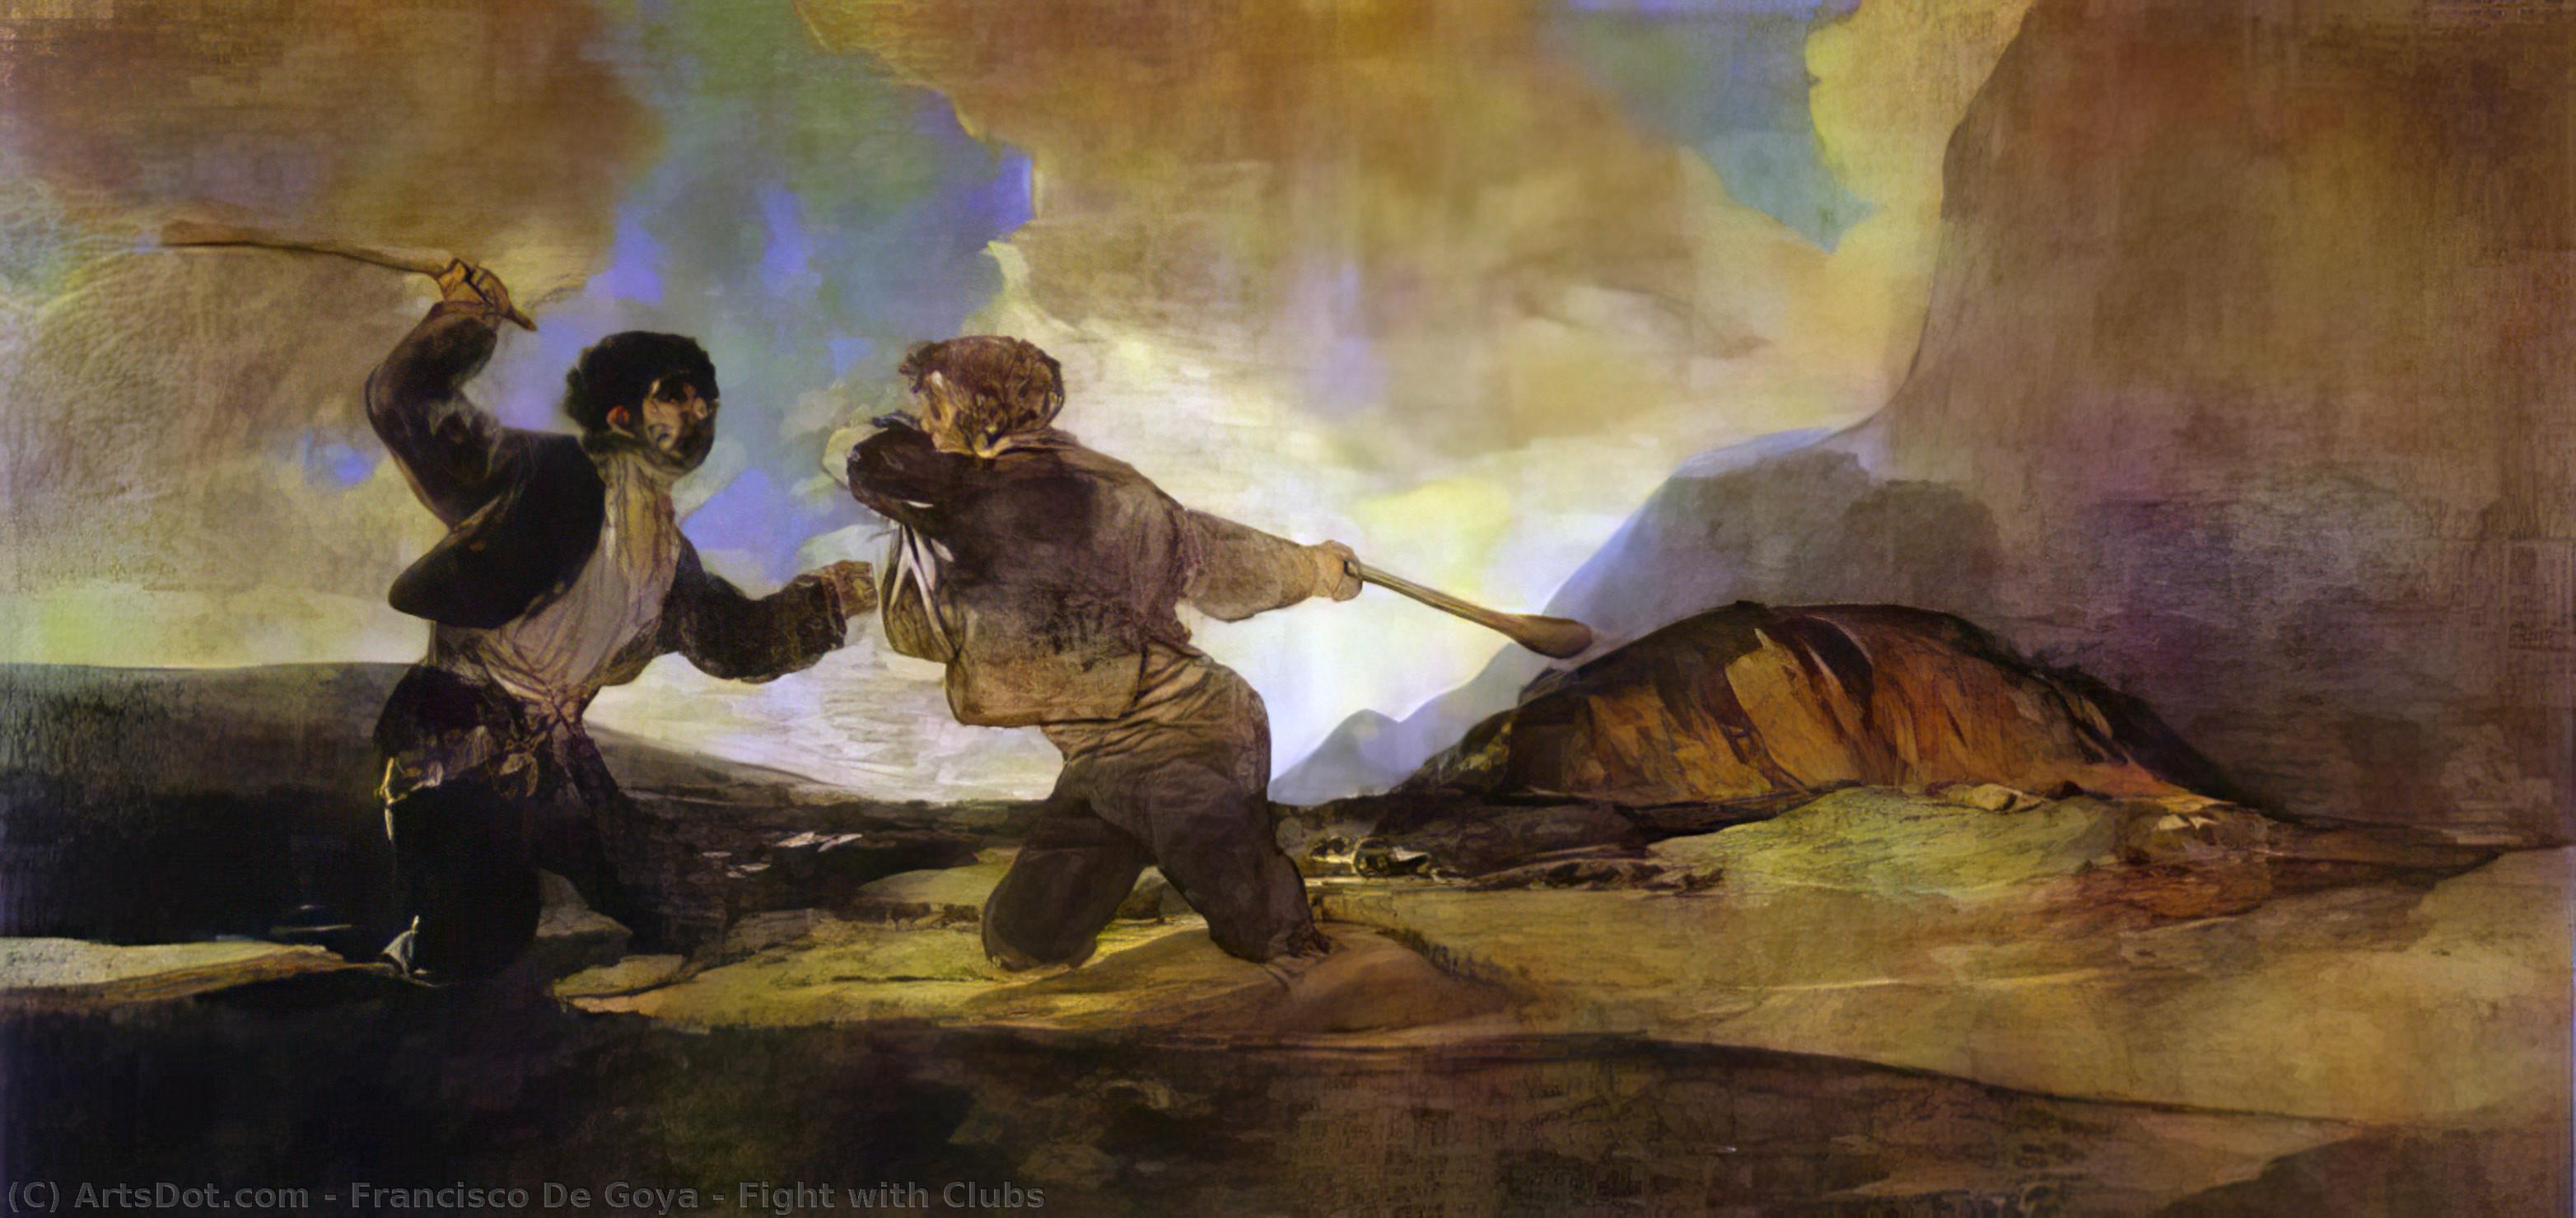 WikiOO.org - Энциклопедия изобразительного искусства - Живопись, Картины  Francisco De Goya - бой с клубами